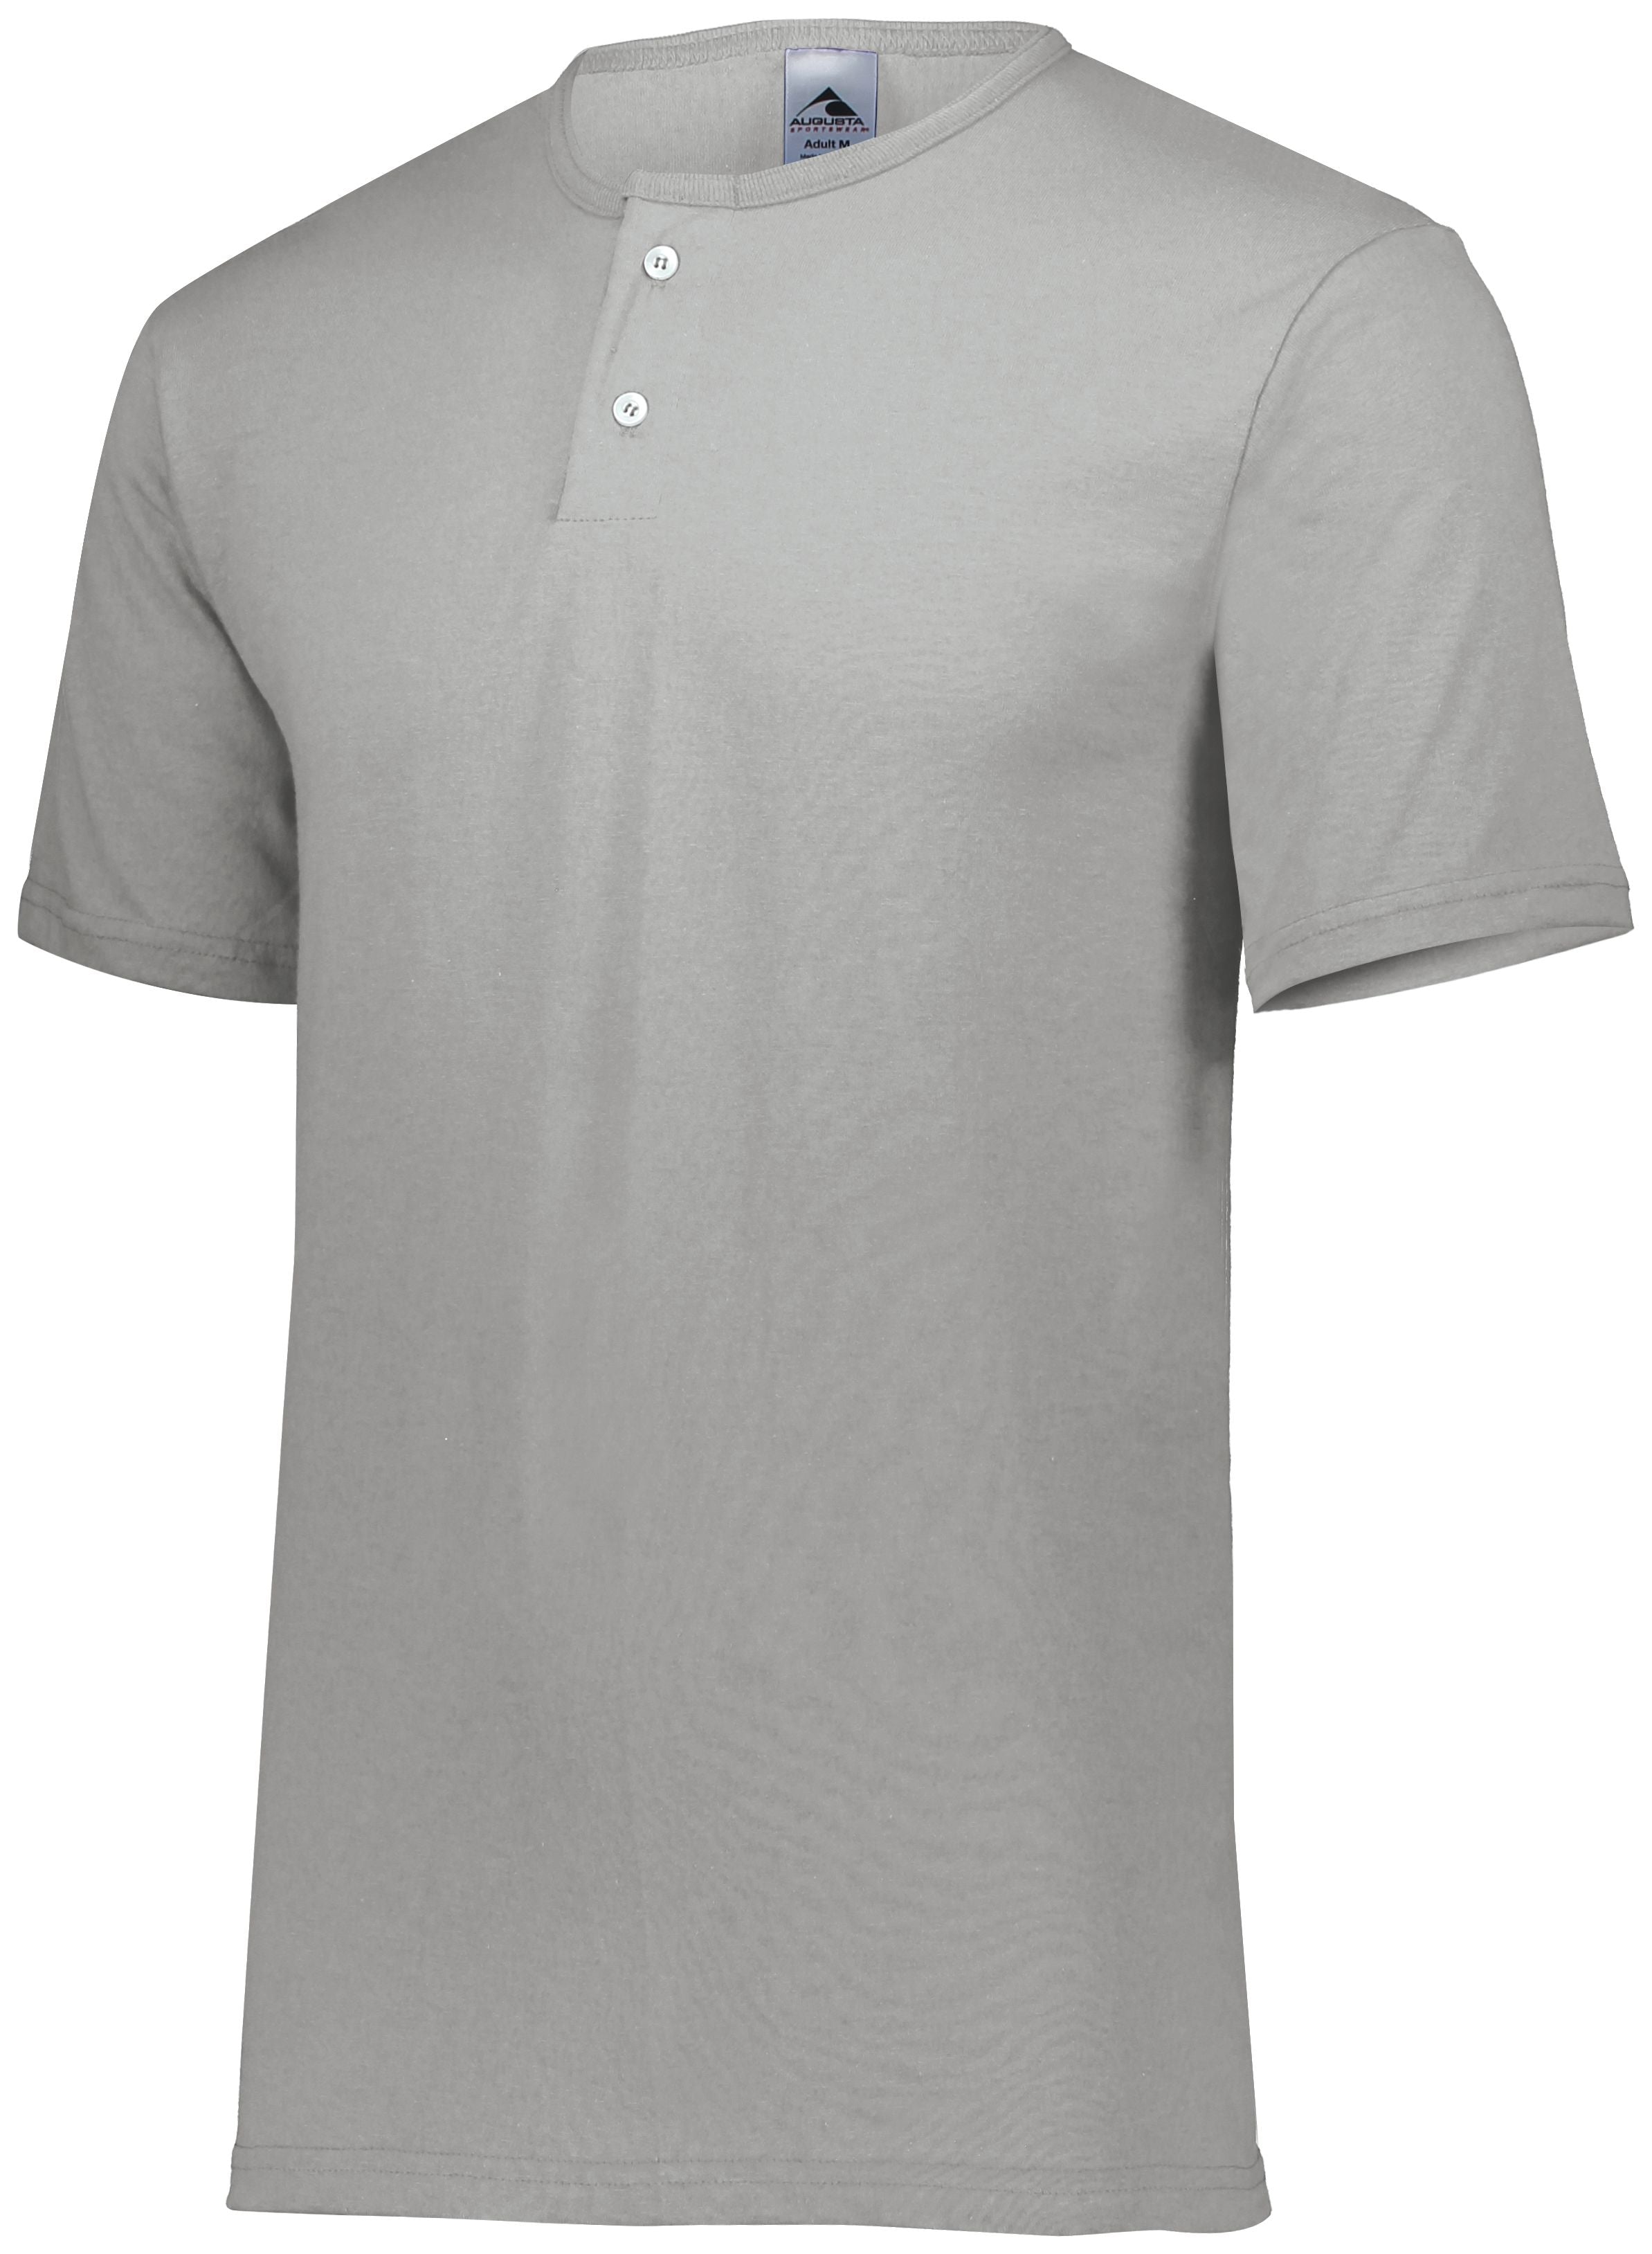 Augusta Sportswear Two-Button Baseball Jersey